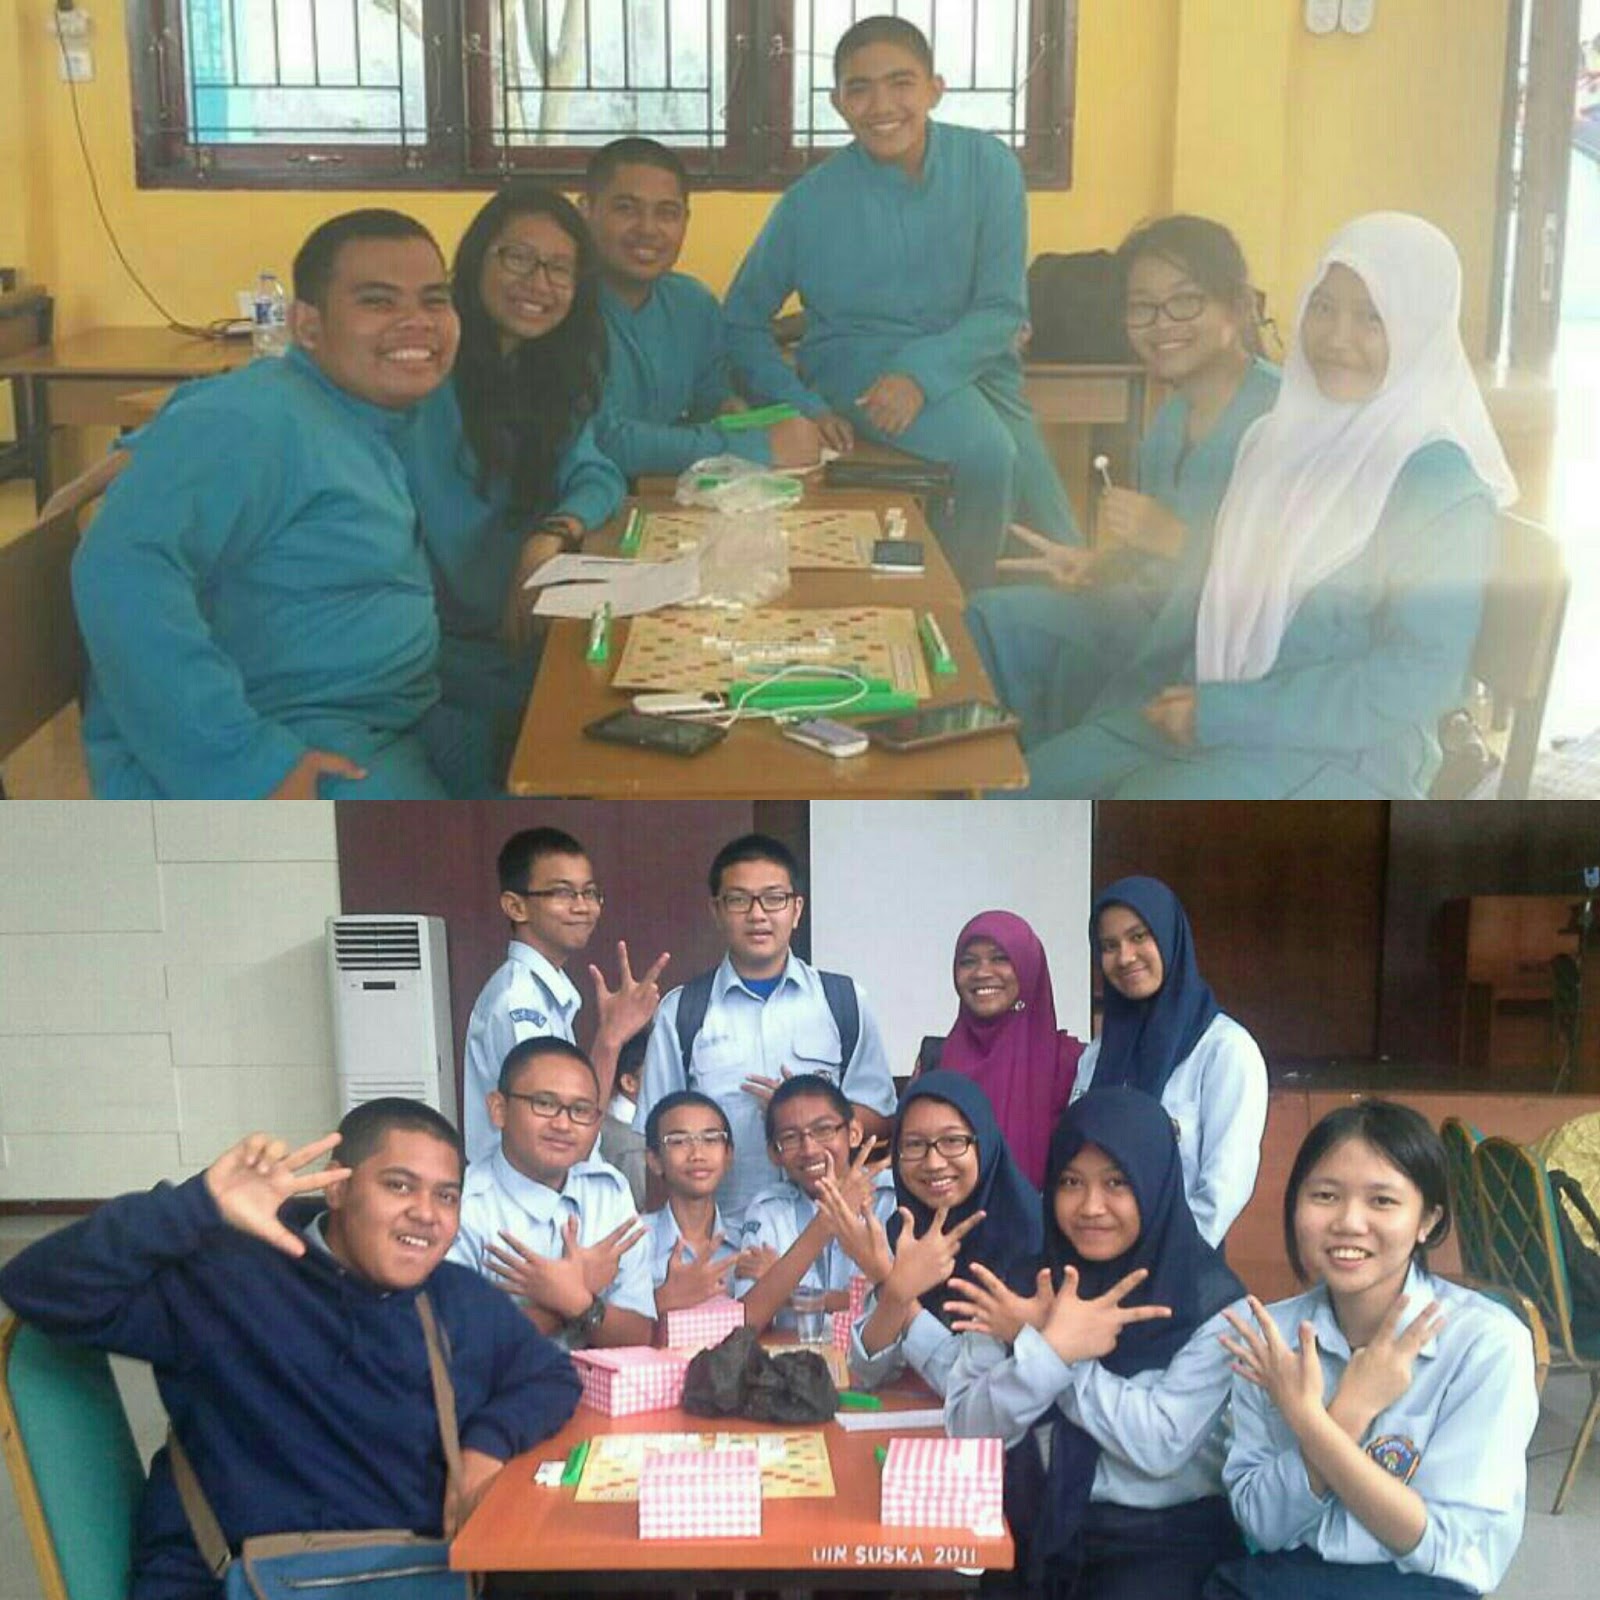 Foto 1 22 Mei 2015 bersama seluruh junior CIBI English Divisi Scrabble 2014 2015 Dari kiri ke kanan Dodo aku Isan Agam Pret Bita